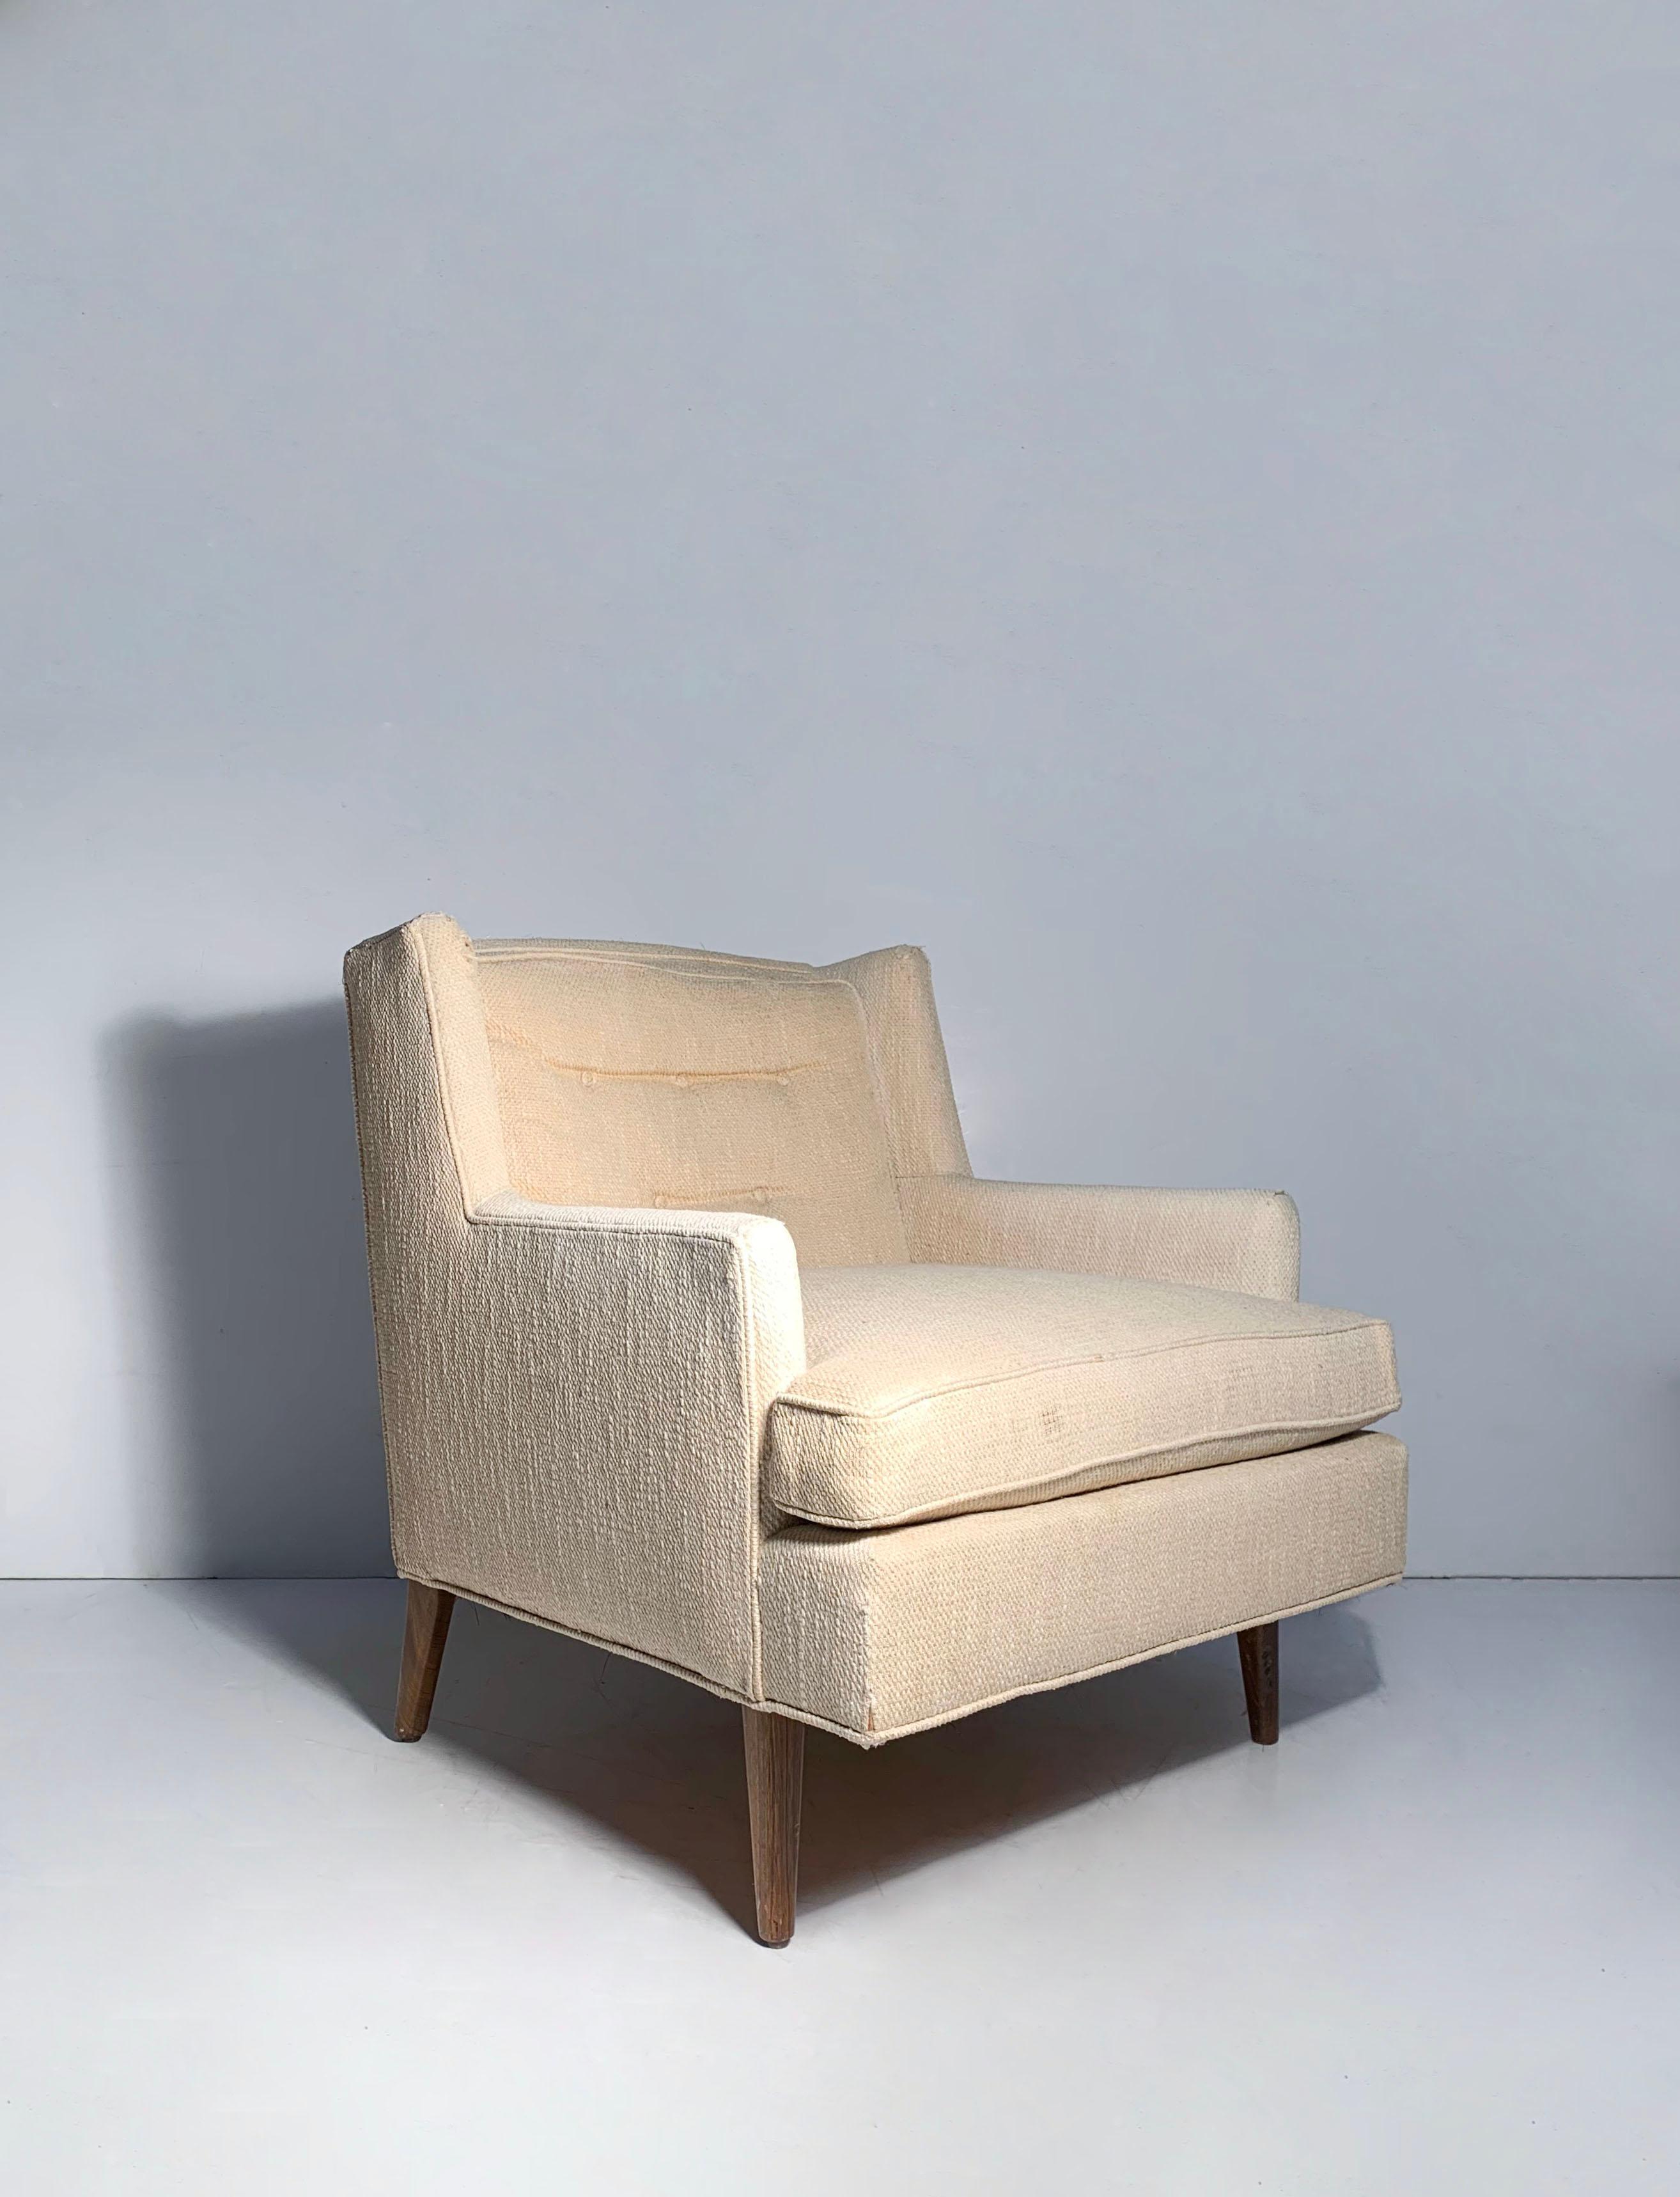 Magnifique paire de chaises longues design à la manière d'Edward Wormley pour Dunbar. De belles étiquettes du détaillant John M-One de Chicago sont jointes. On ne sait pas avec certitude qui est le concepteur de ces chaises.

Ils doivent être